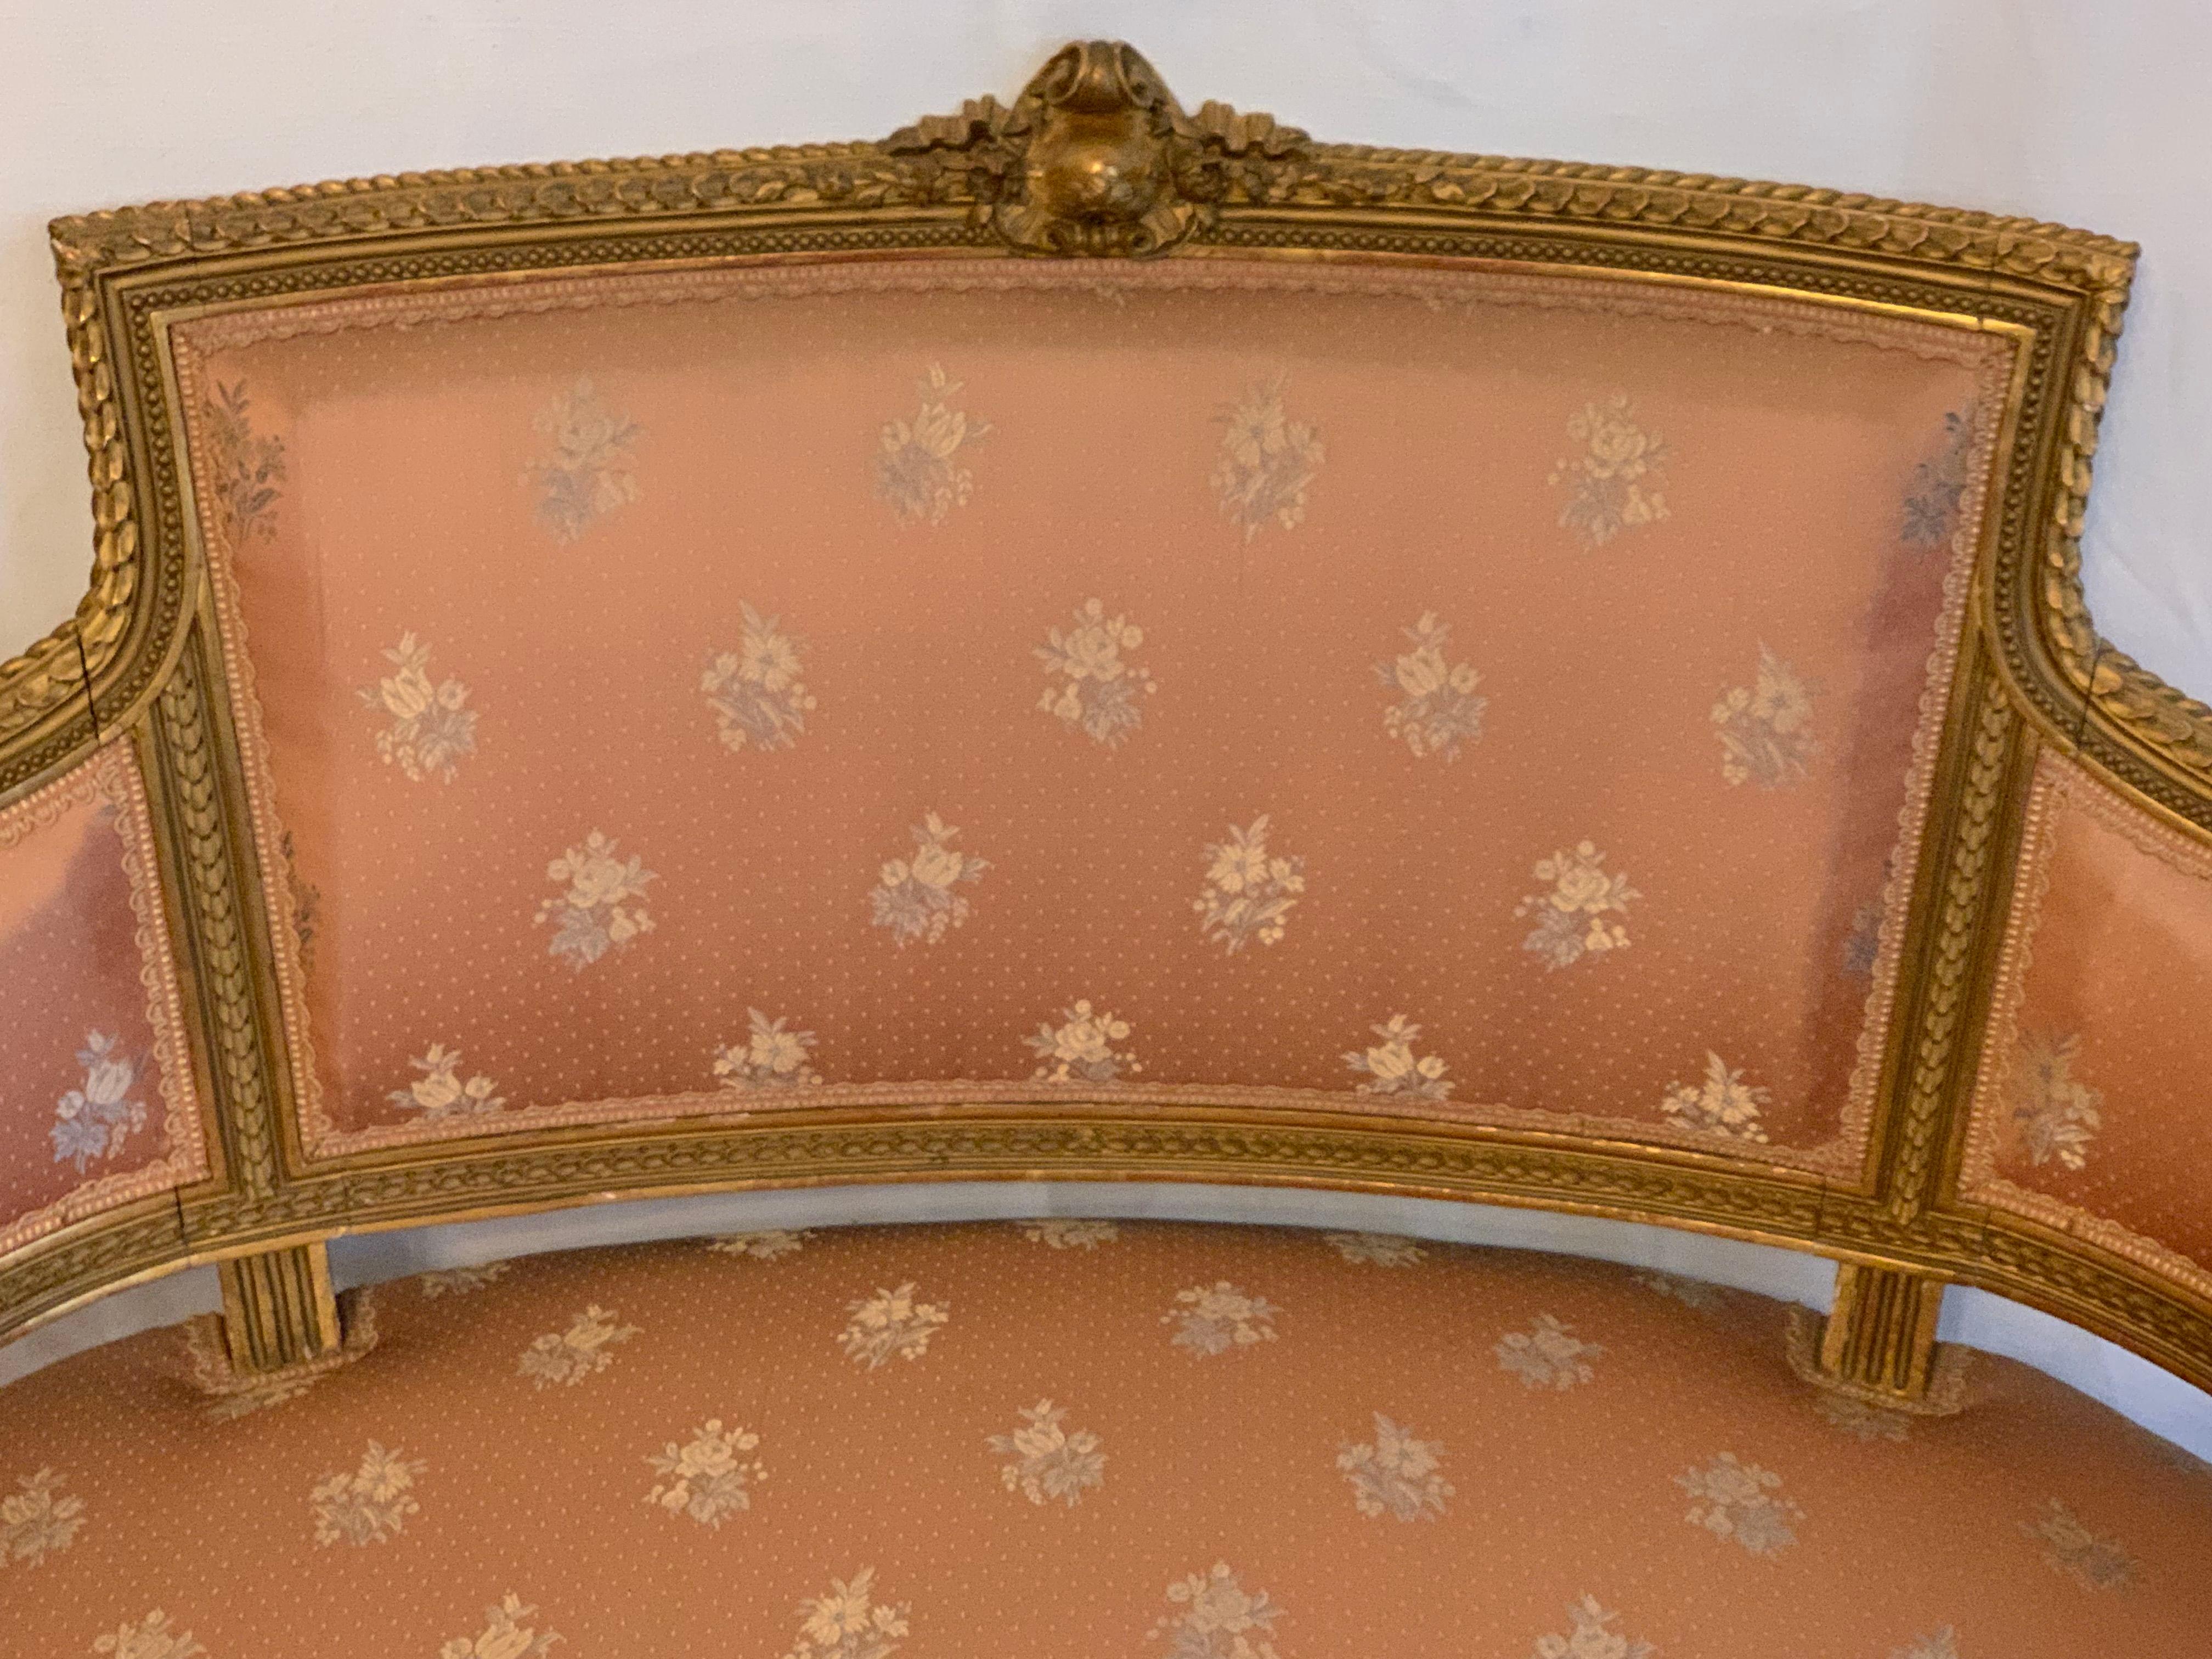 Ein prächtiger Sessel aus Kiefernholz  louis xv stil in exelentem zustand und  sicherlich von einem der besten Pariser Innenarchitekten dieser Zeit ausgeführt
